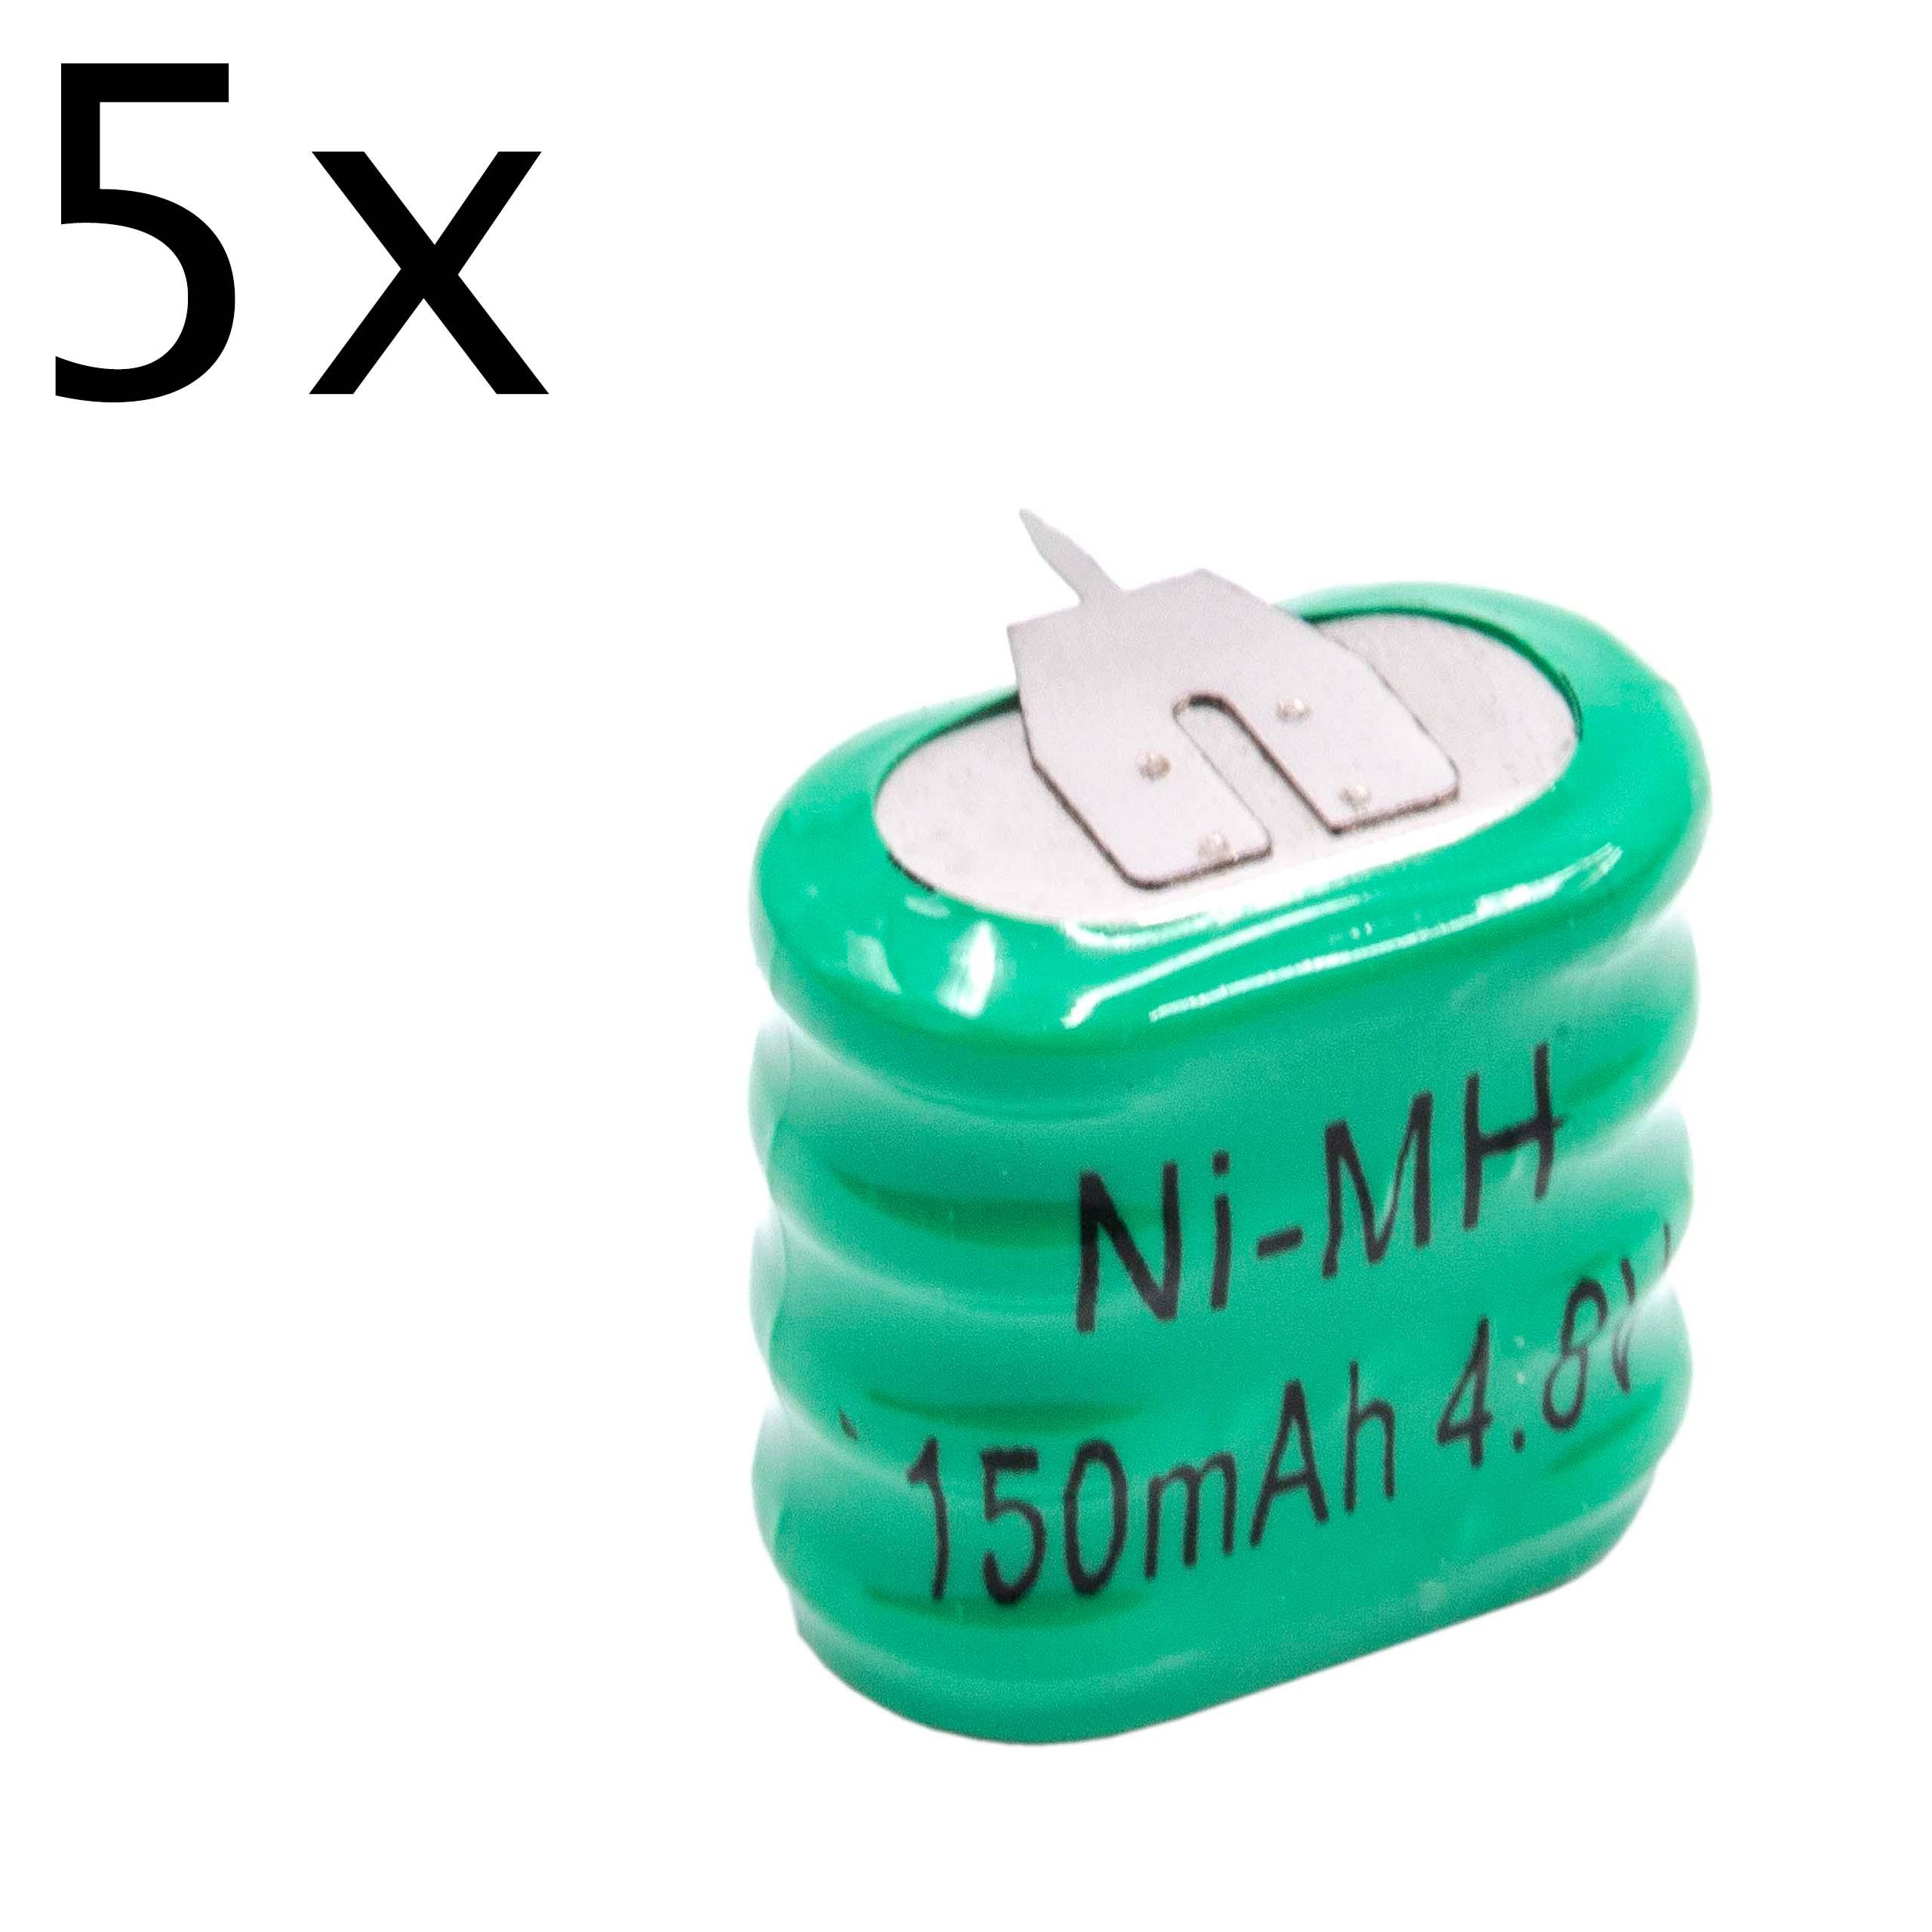 5x Batteria a bottone (4x cella) tipo 4/V150H 3 pin sostituisce 4/V150H per modellismo, luci solari ecc. 